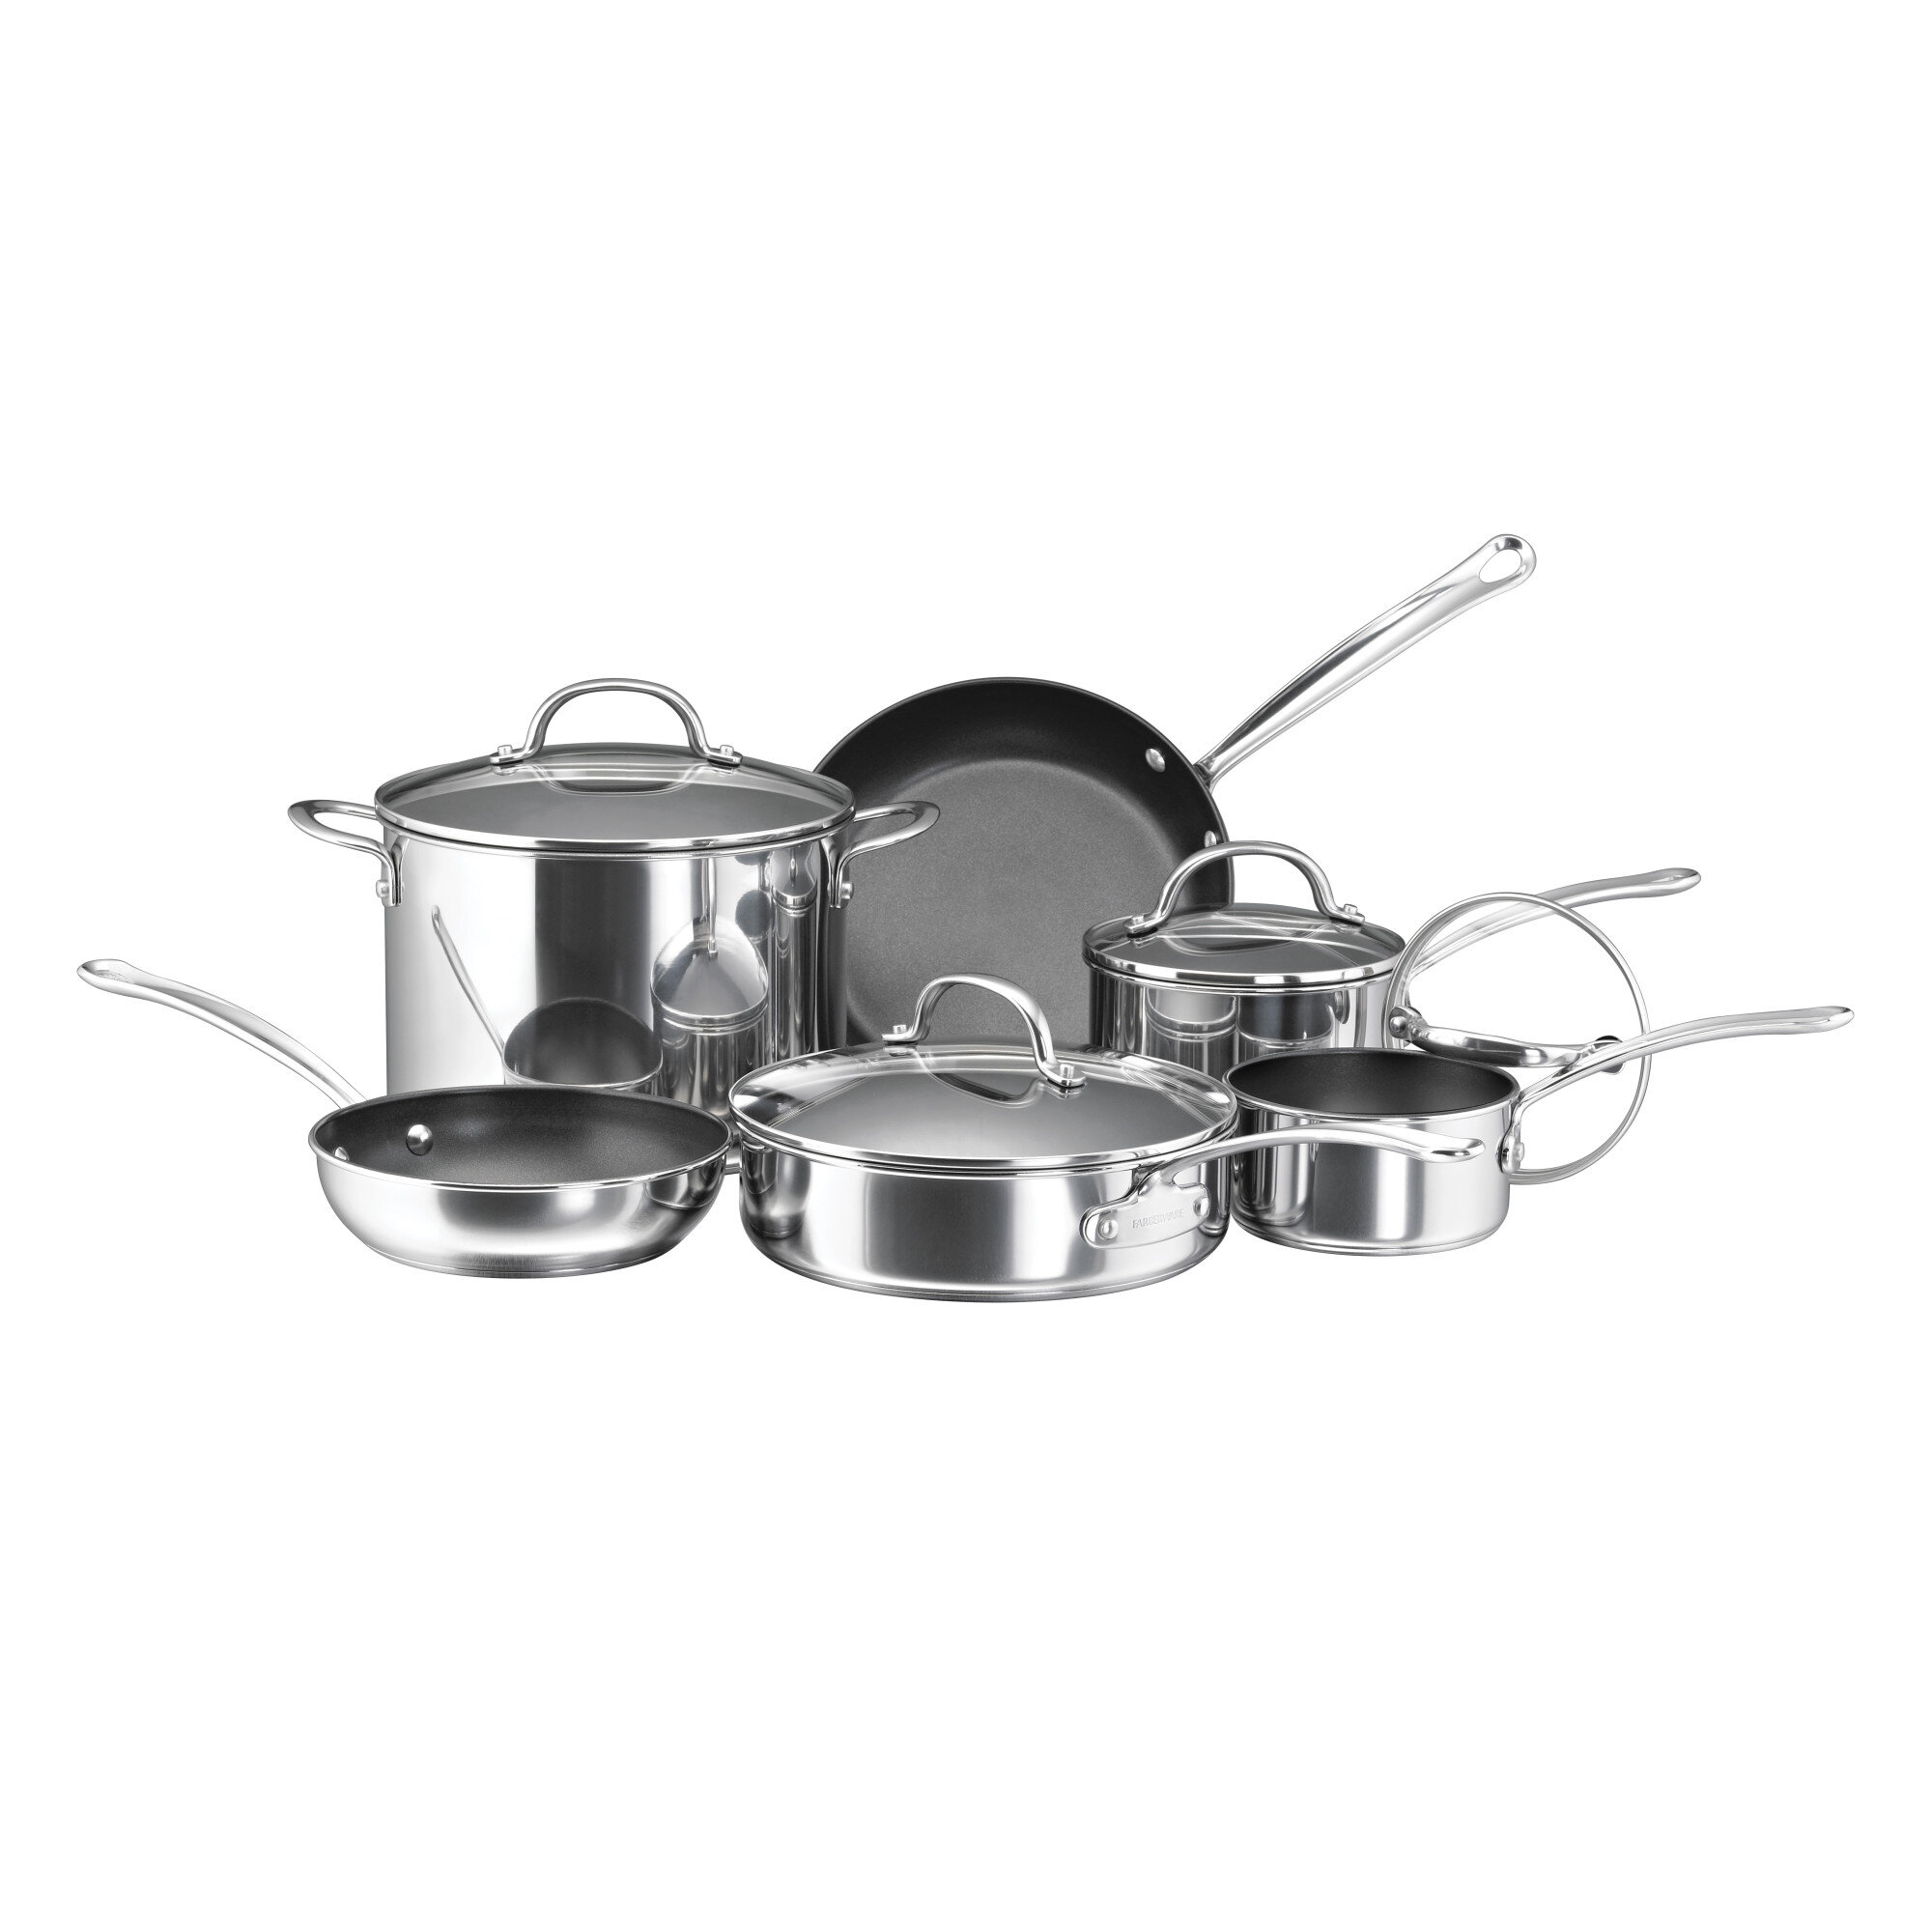 https://assets.wfcdn.com/im/31231807/compr-r85/1707/170747197/farberware-millennium-stainless-steel-nonstick-cookware-set-10-piece.jpg